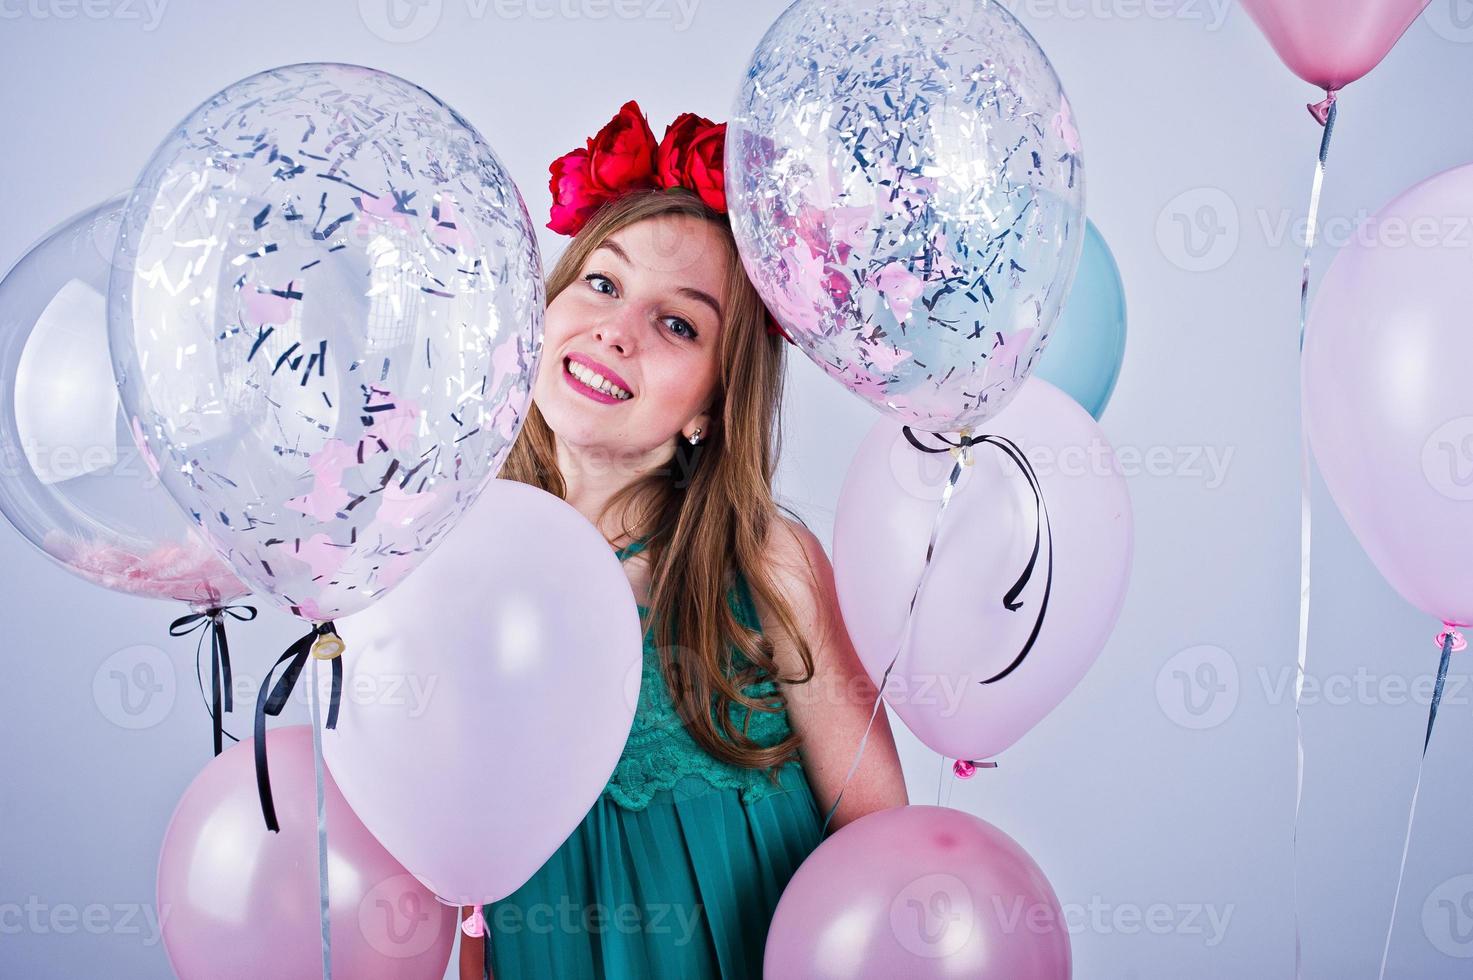 garota feliz no vestido verde turquesa e grinalda com balões coloridos isolados no branco. comemorando o tema do aniversário. foto